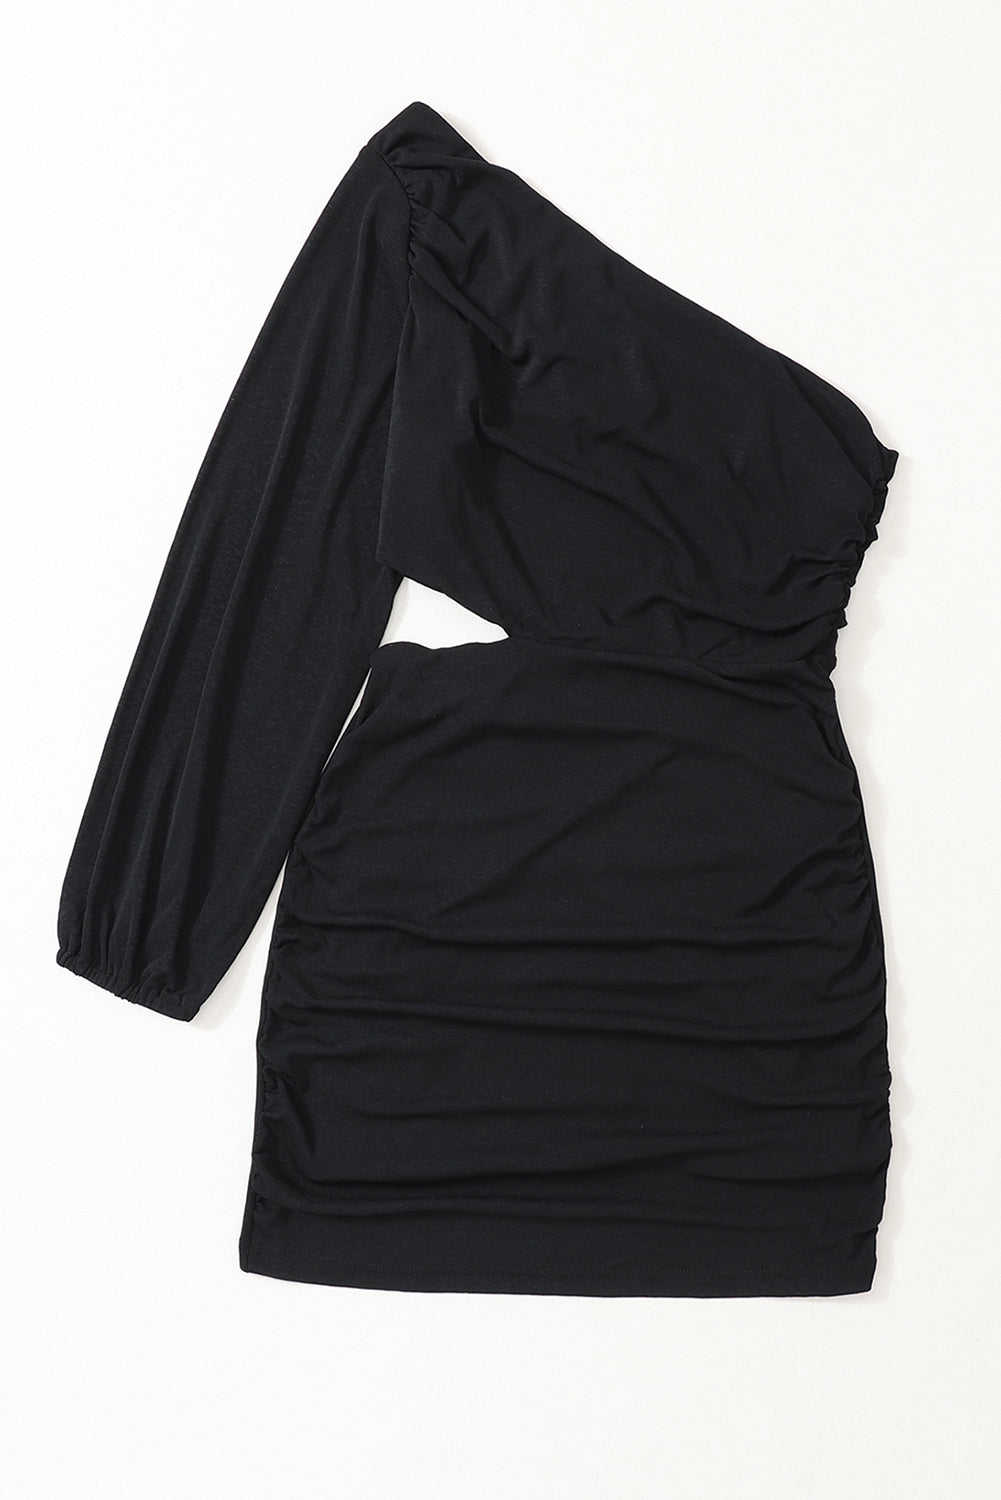 Schwarzes, asymmetrisches, figurbetontes Kleid mit One-Shoulder-Ausschnitt